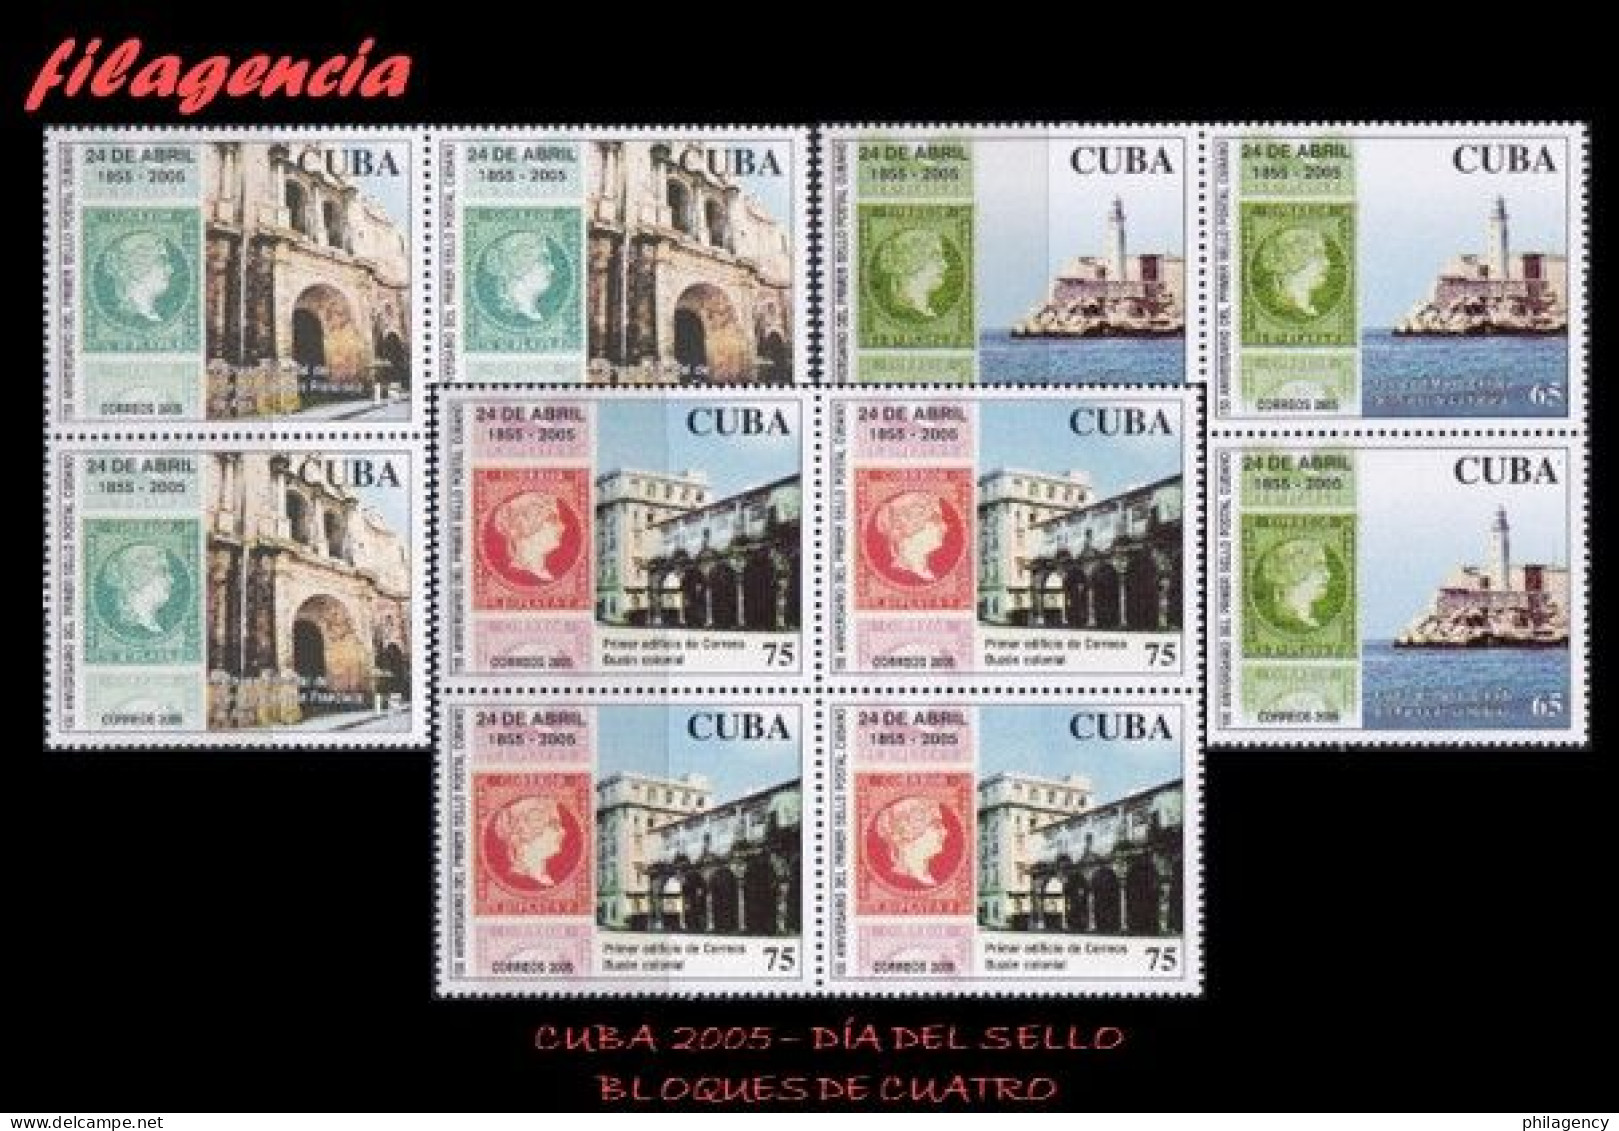 CUBA. BLOQUES DE CUATRO. 2005-14 DÍA DEL SELLO CUBANO. PRIMERA EMISIÓN DE SELLOS CIRCULADOS EN CUBA - Neufs